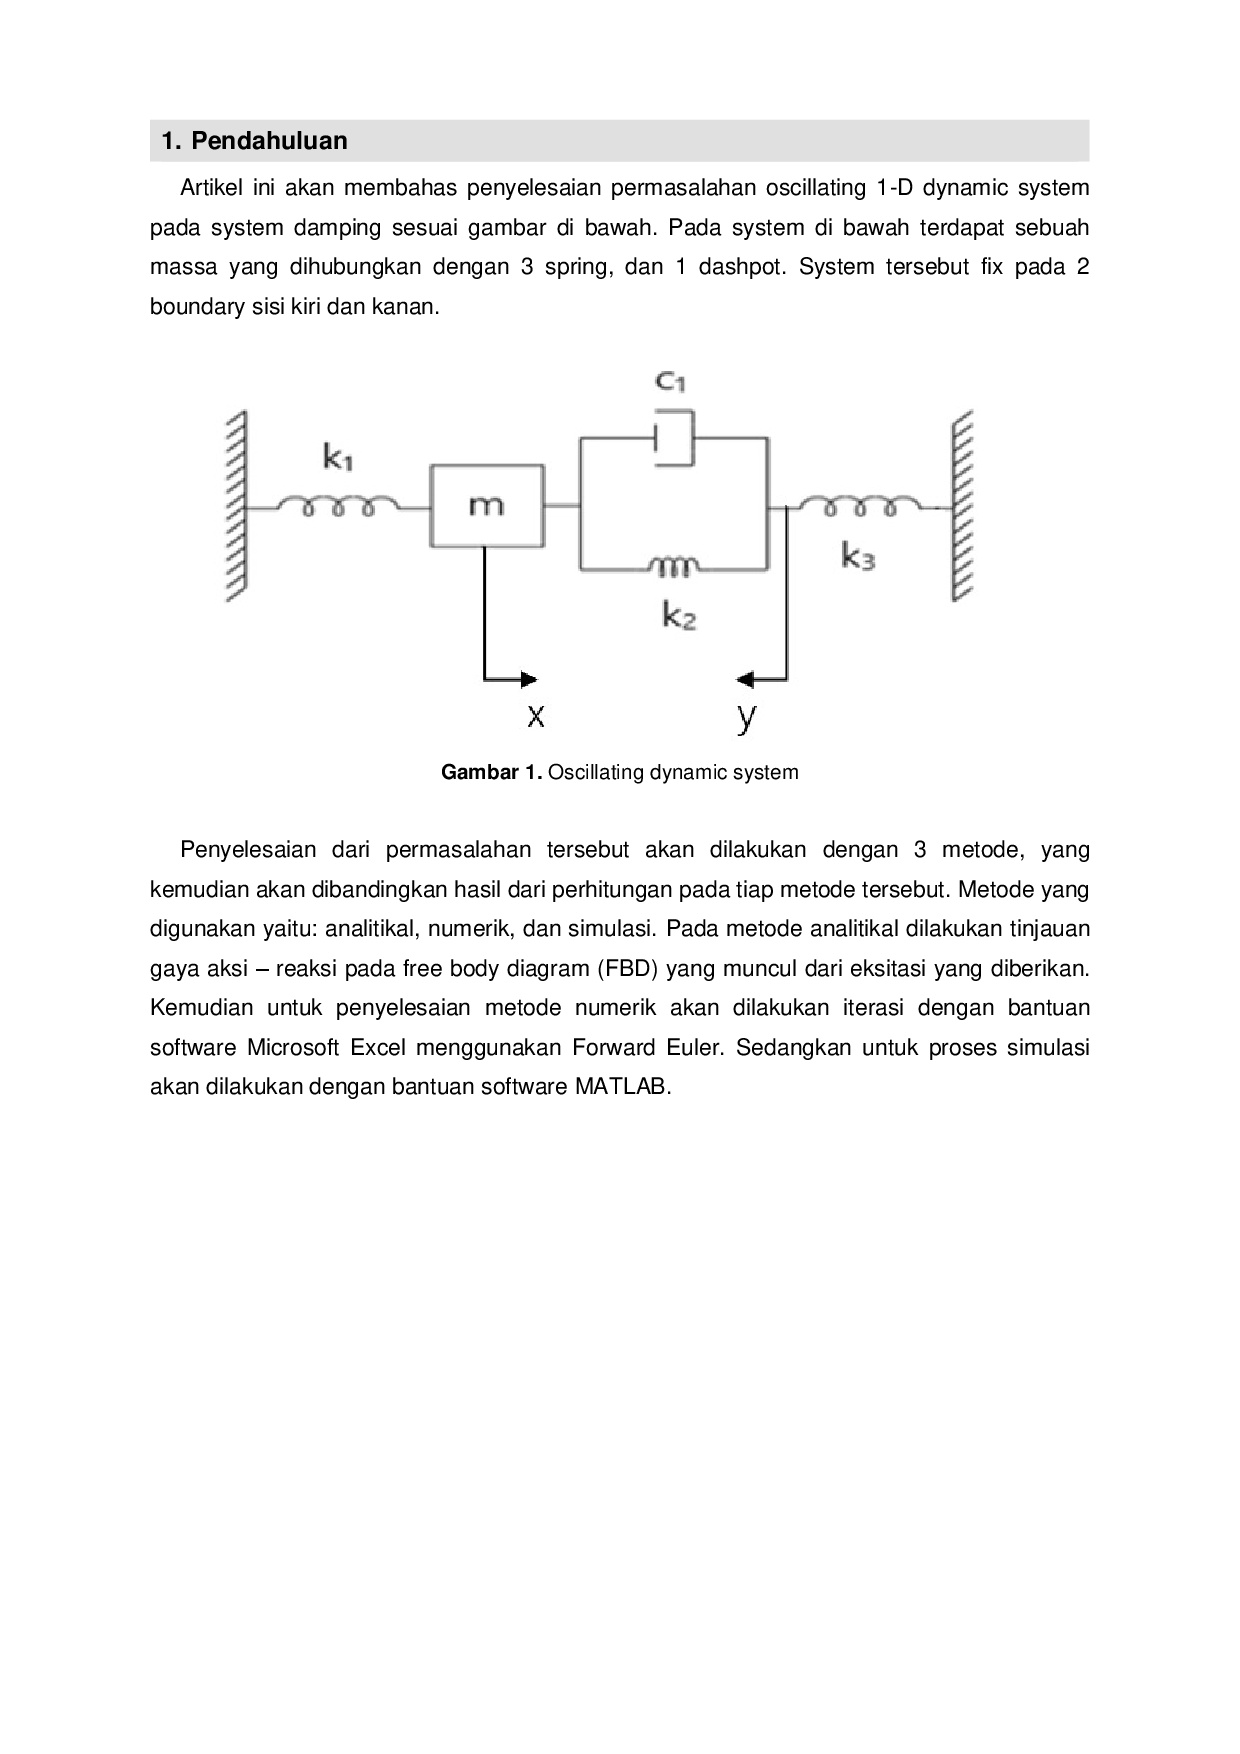 Tugas Komtek Artikel Oscillating Dynamic System-002.jpg